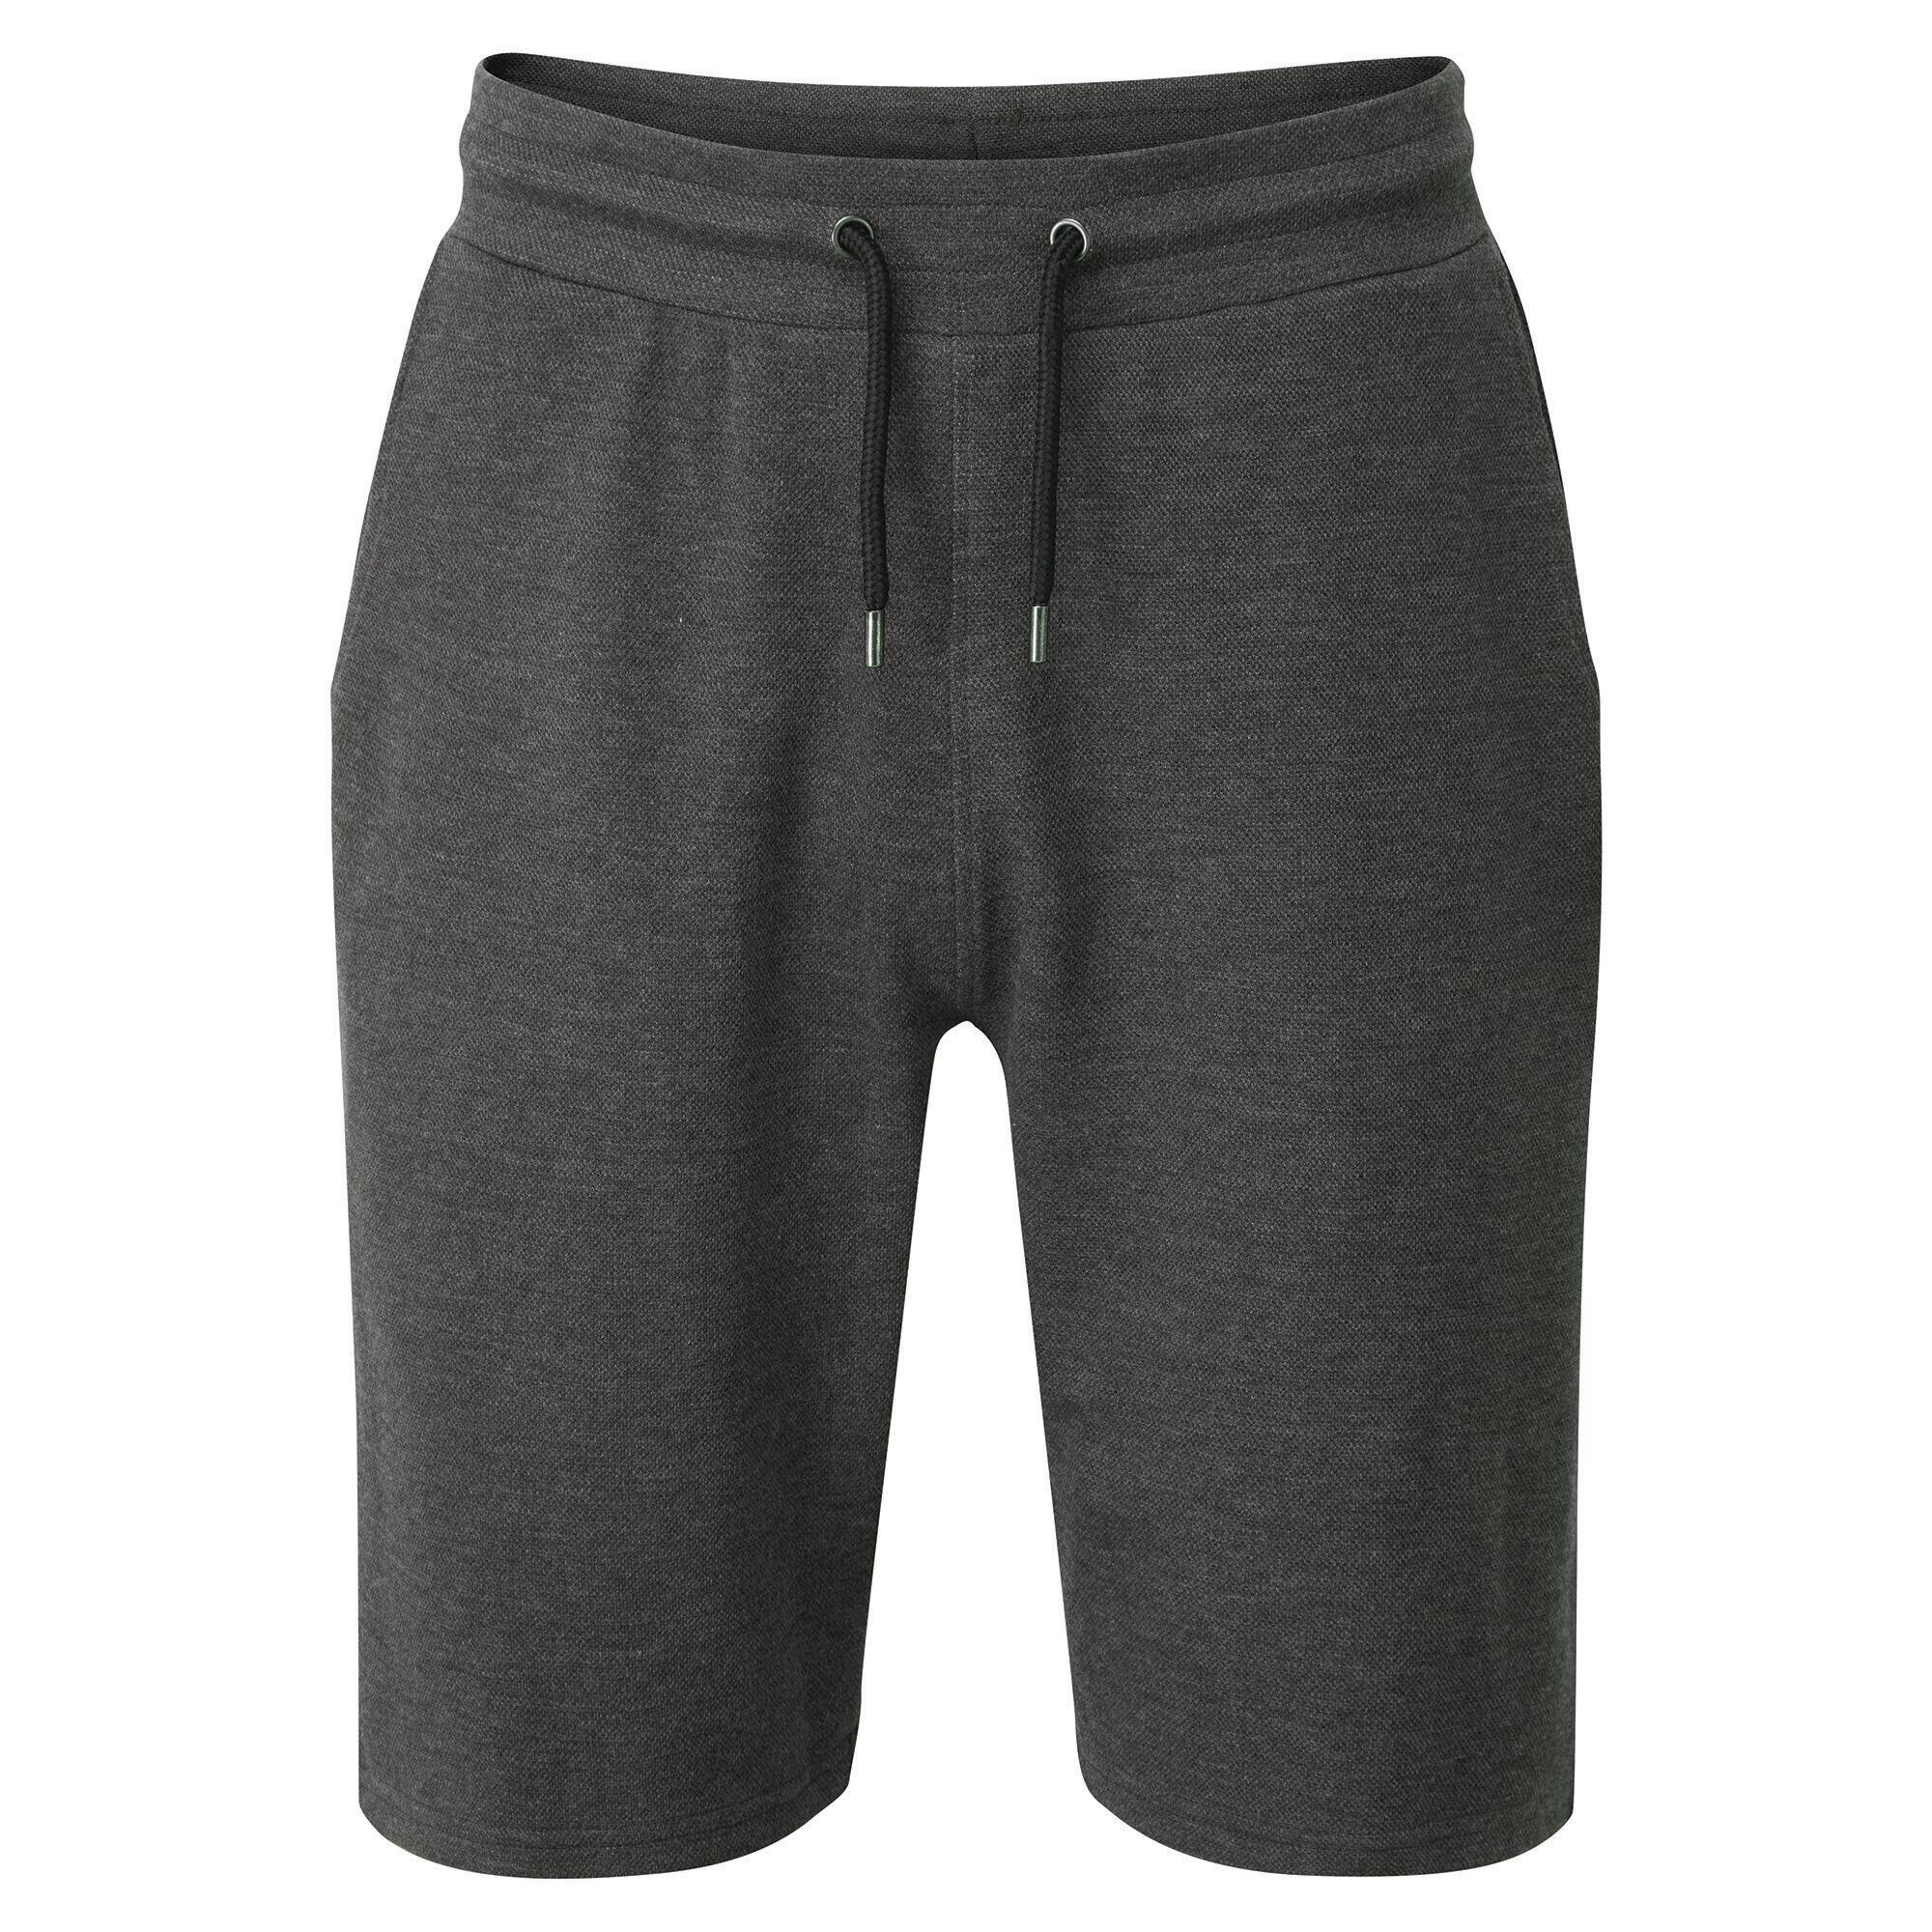 Men's Continual Drawstring Shorts 5/5